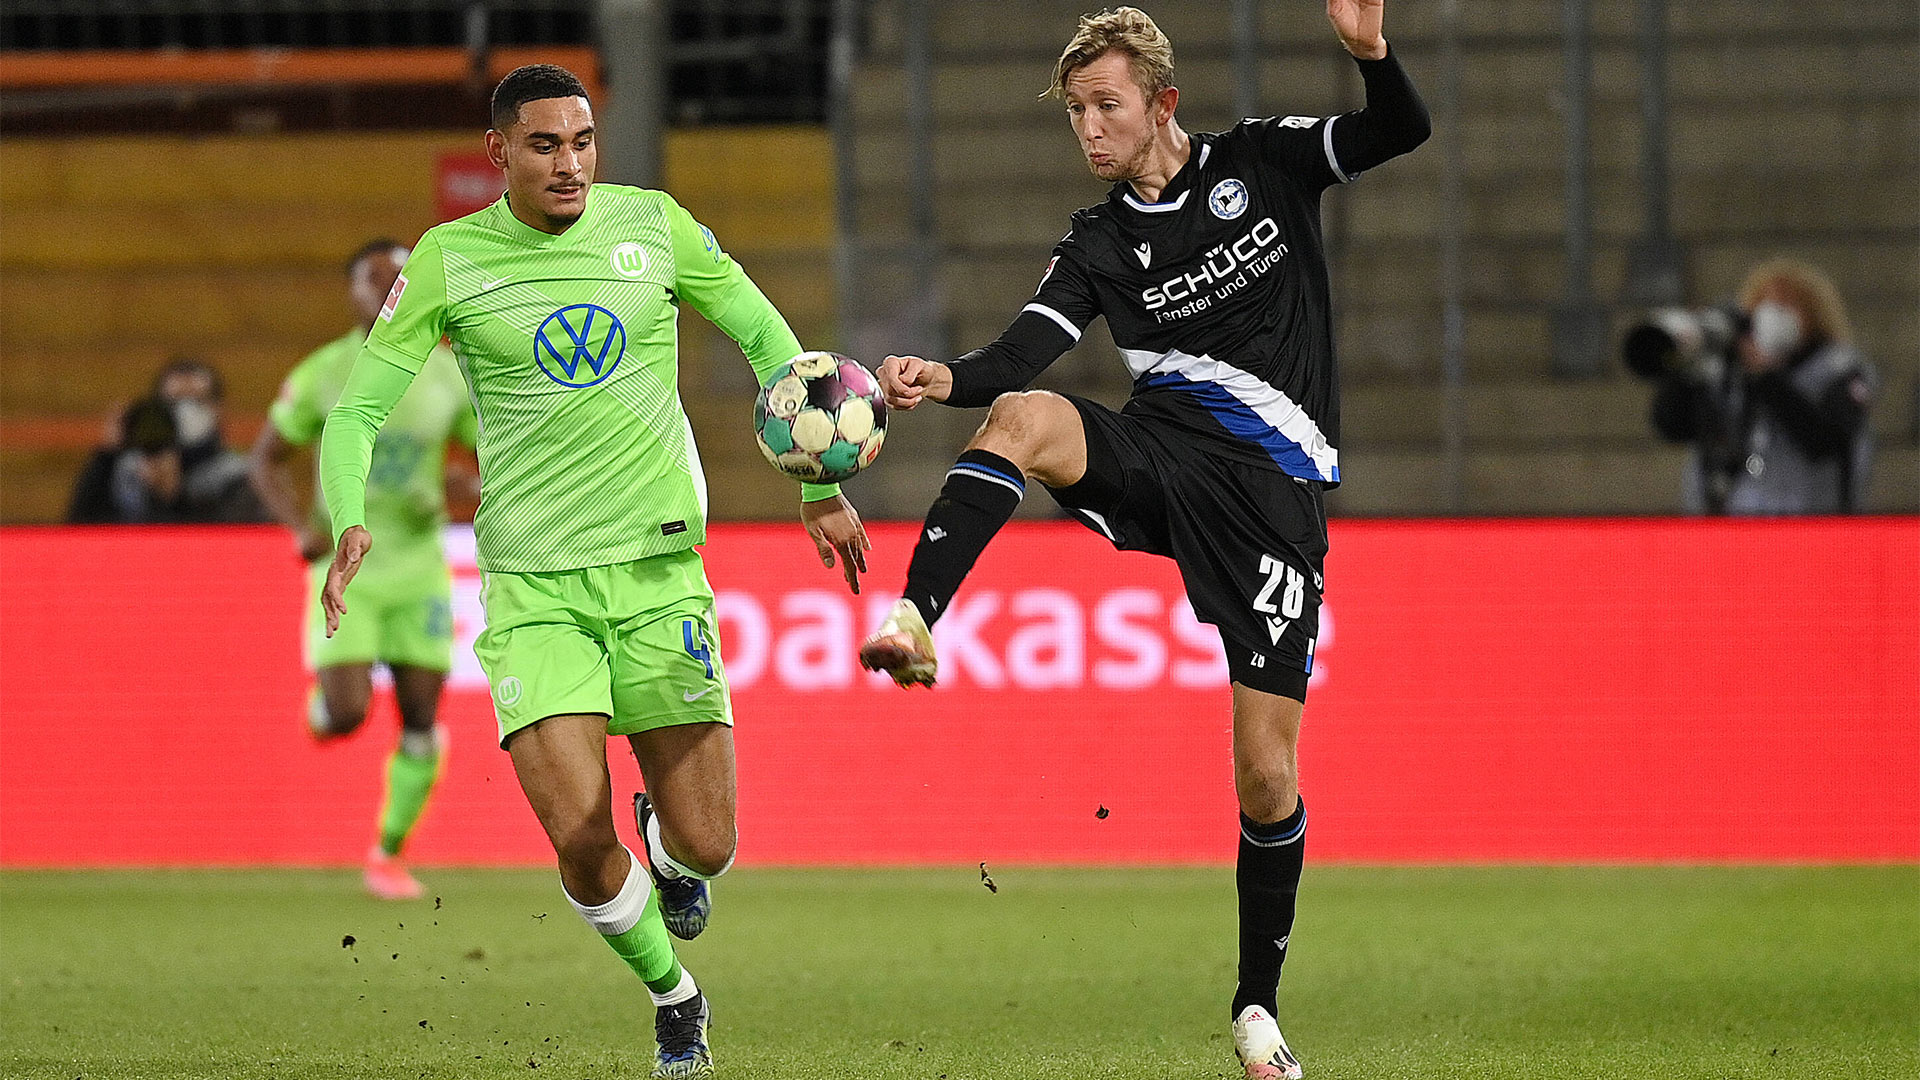 Ein Spieler des VfL Wolfsburg im Duell mit einem Gegenspieler.